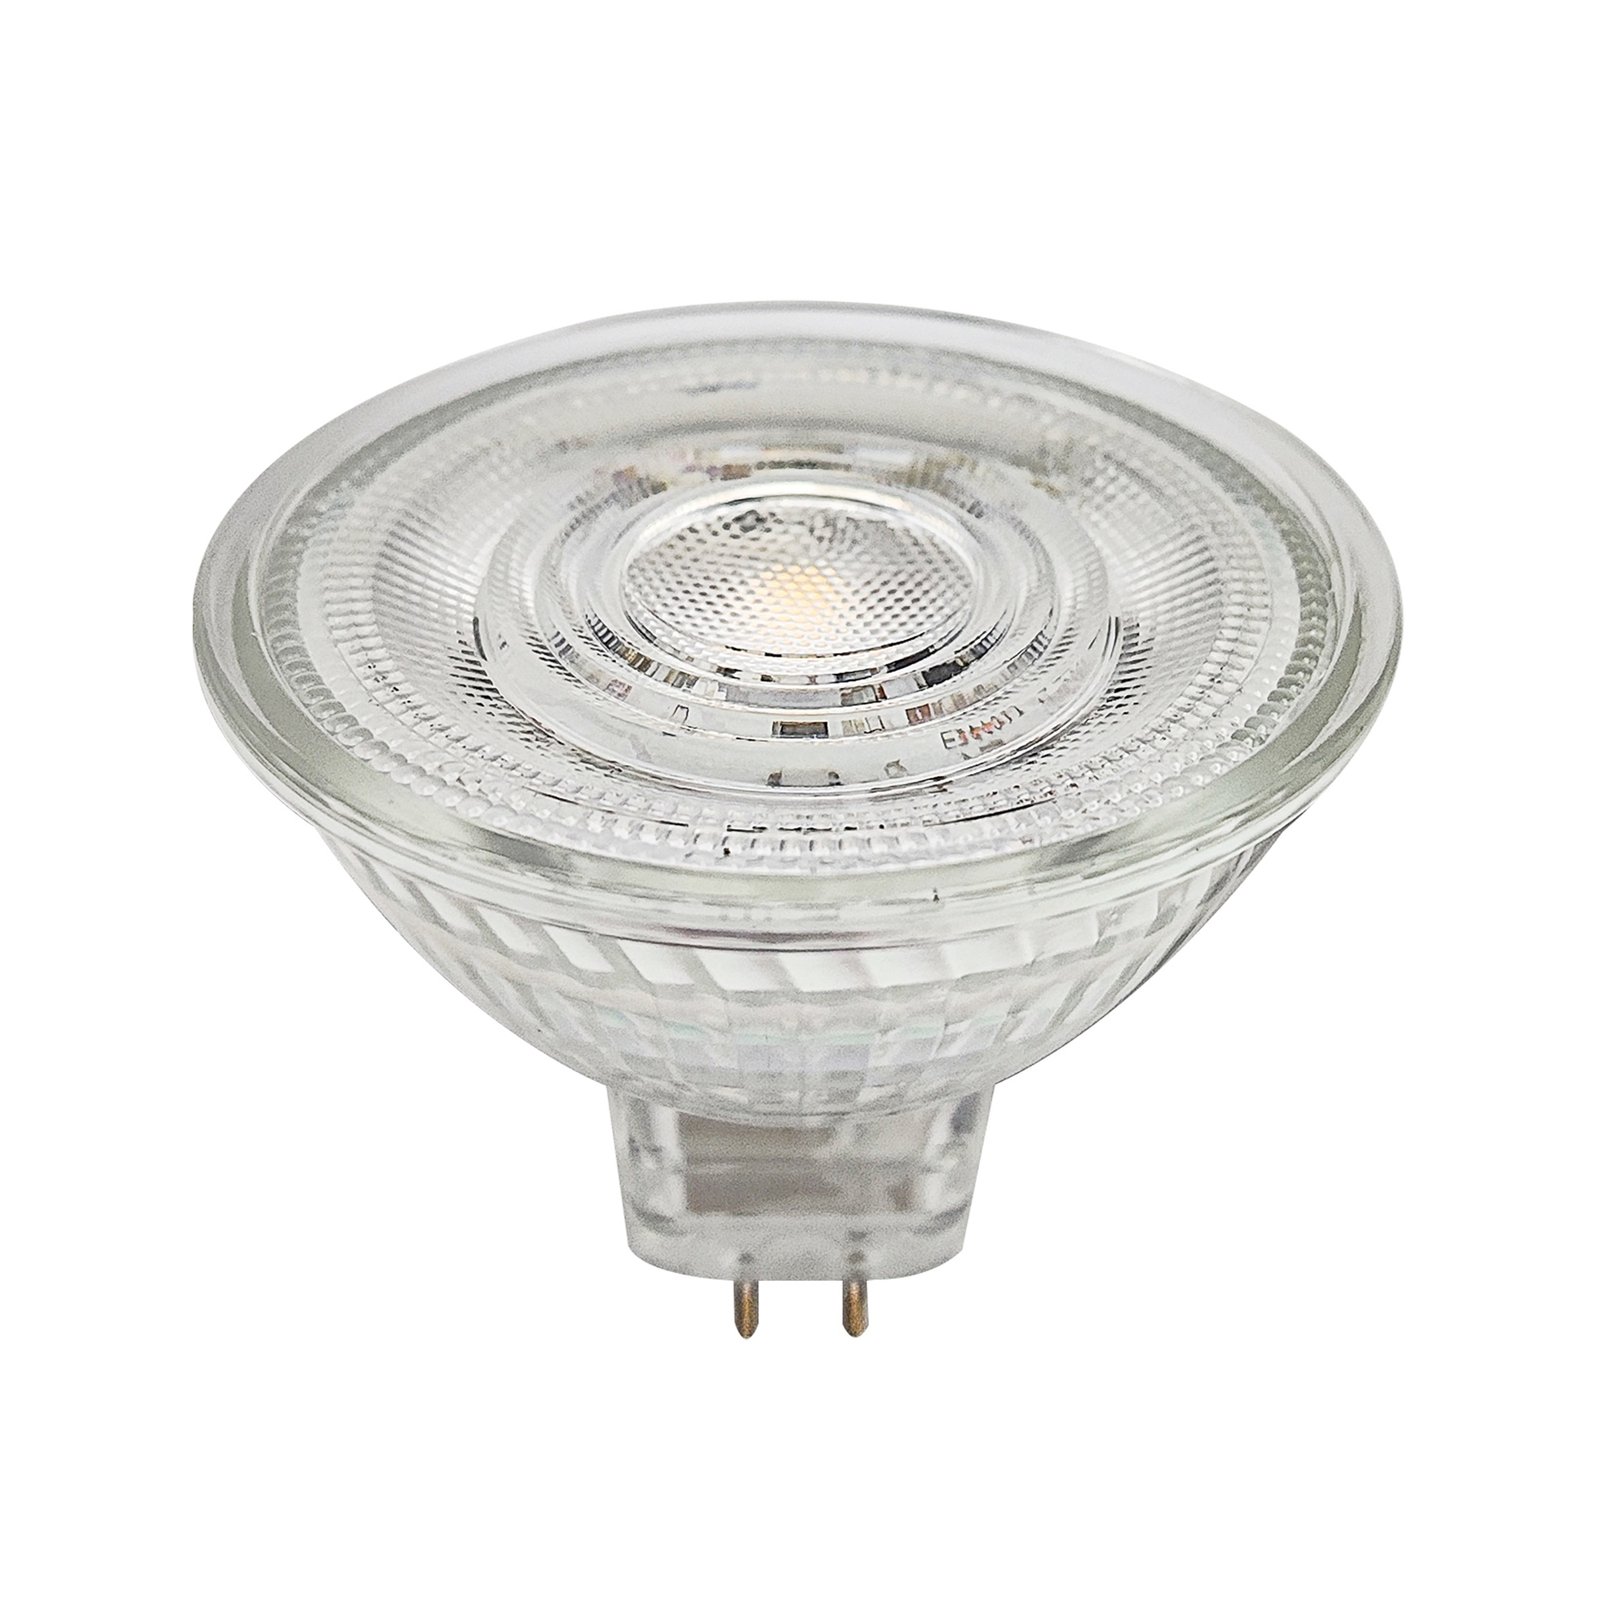 Prios LED reflectorlamp GU5.3 4.9W 500lm 36° helder 827